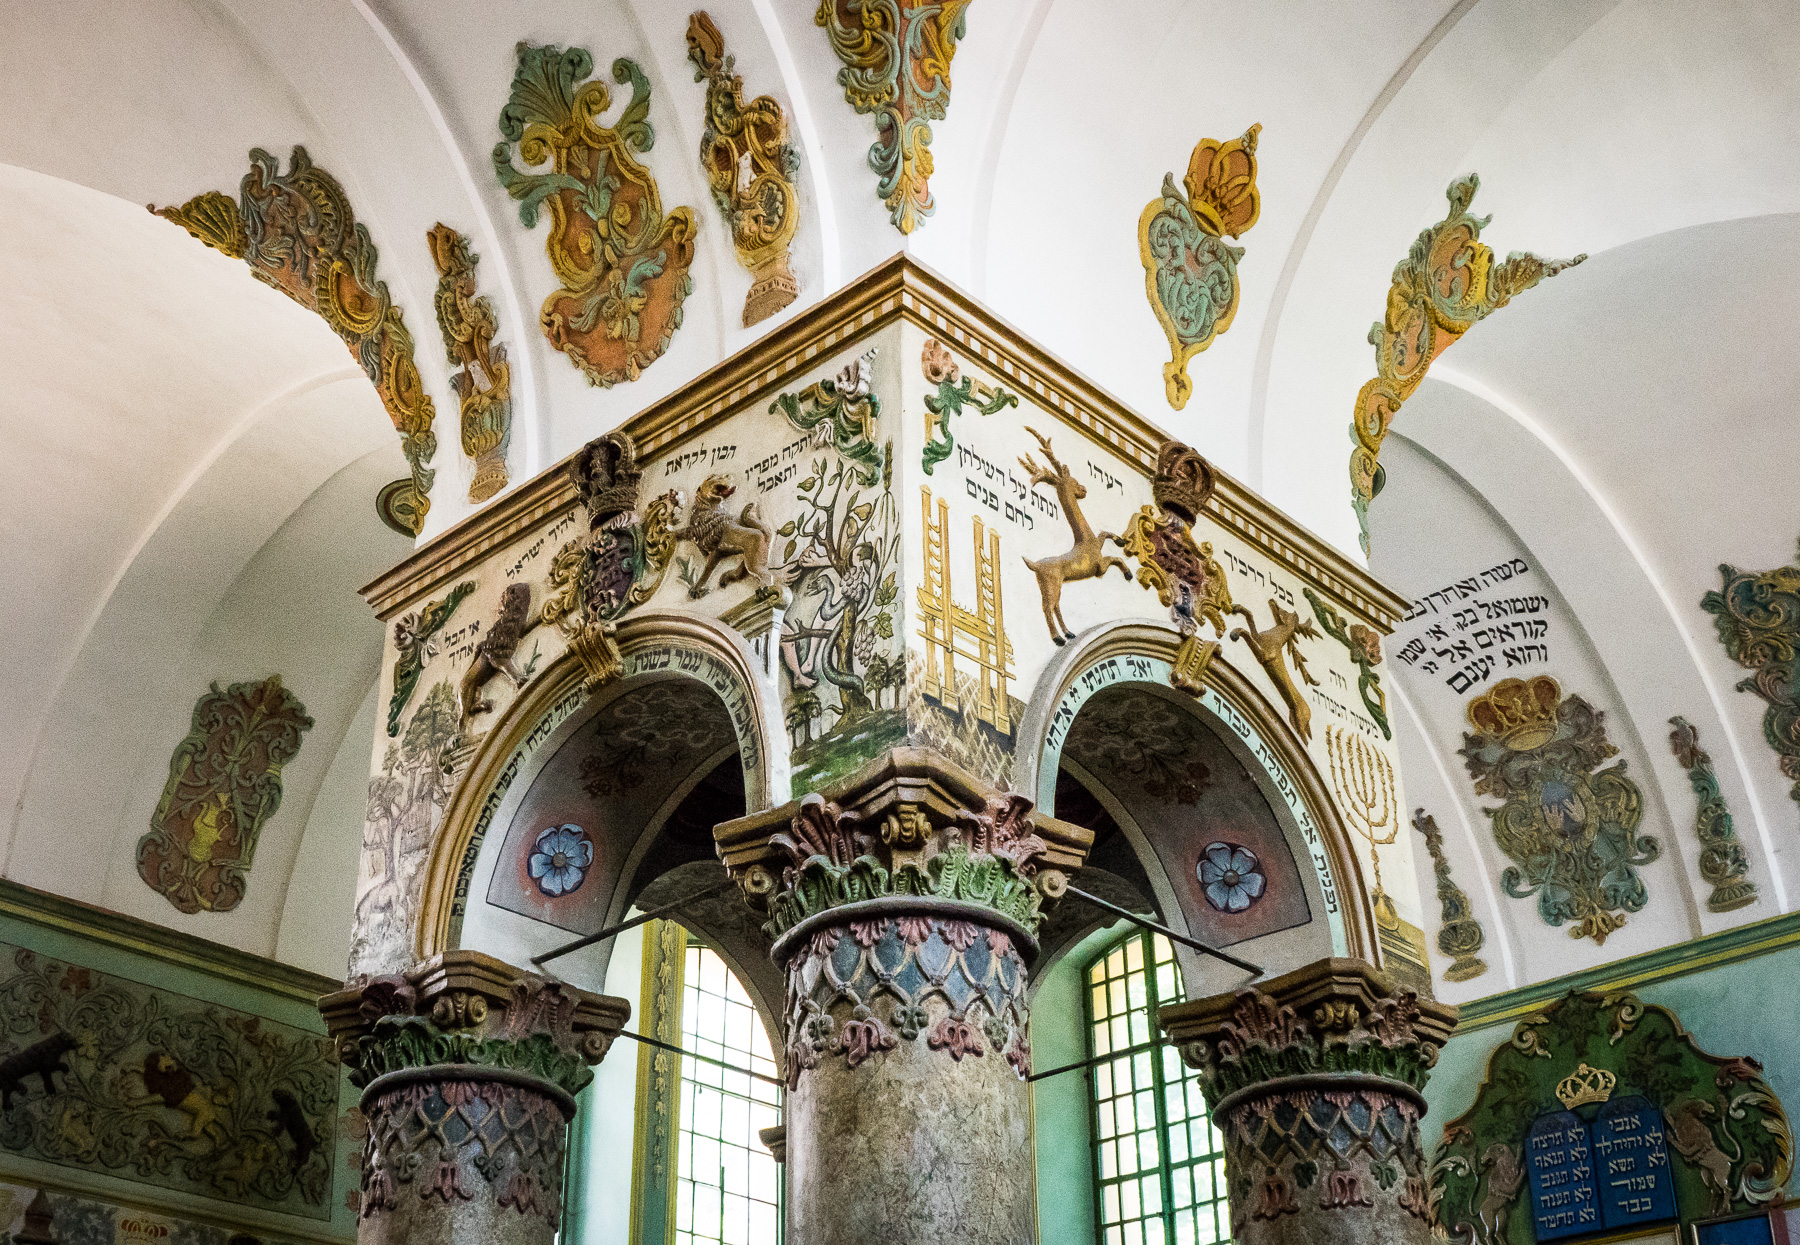 Wnętrze synagogi. W centralnym miejscu bima z bogatymi zdobieniami. Widać elementy roślinne, oraz hebrajskie napisy.